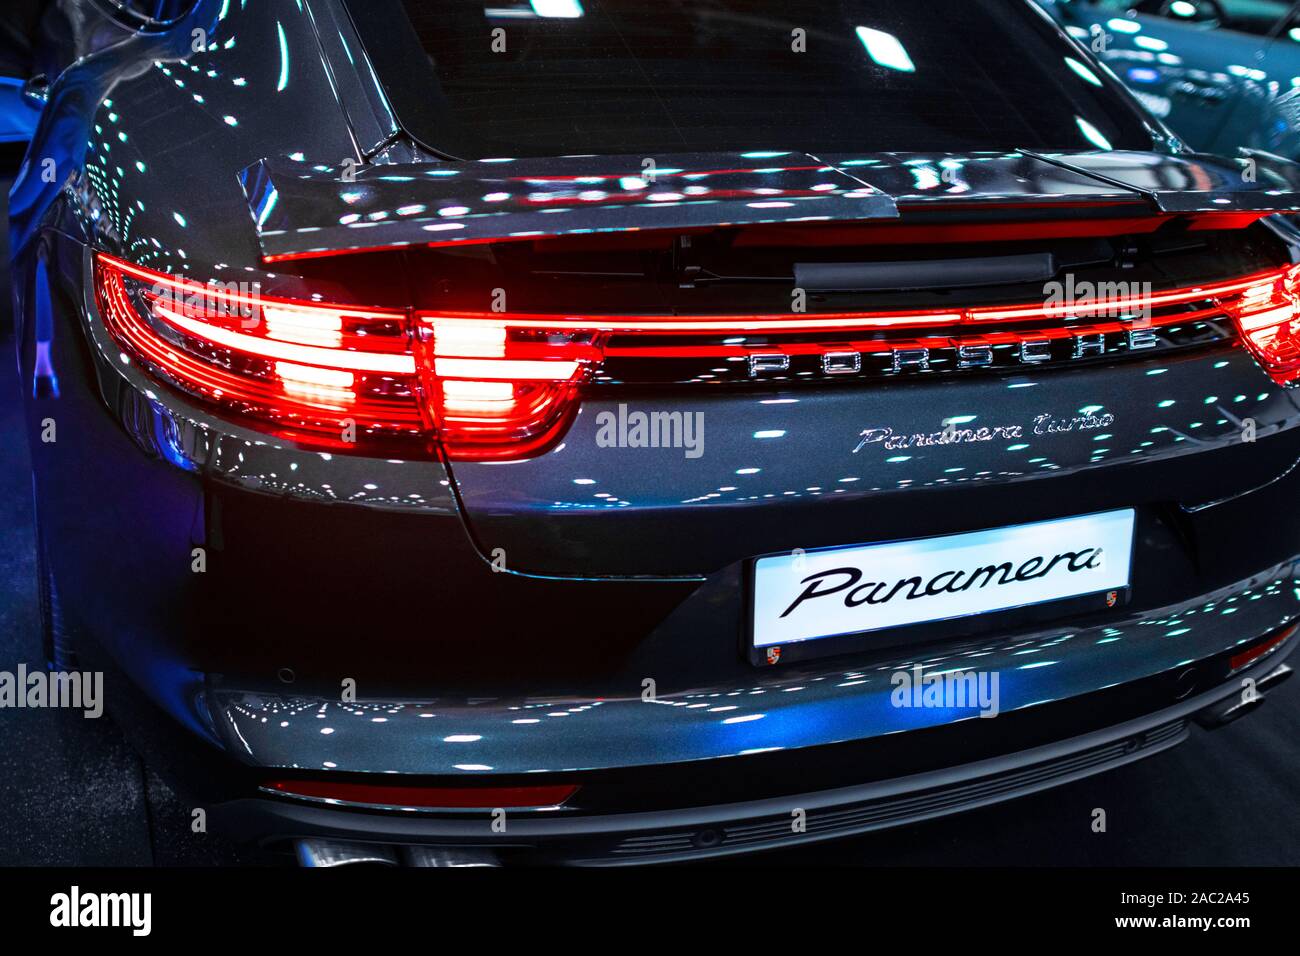 Kirov Russie 21 juillet 2017 : vue arrière d'une Porsche Panamera Turbo avec becquet aérodynamique arrière adaptatif. Lumière arrière Location détails extérieurs. Banque D'Images